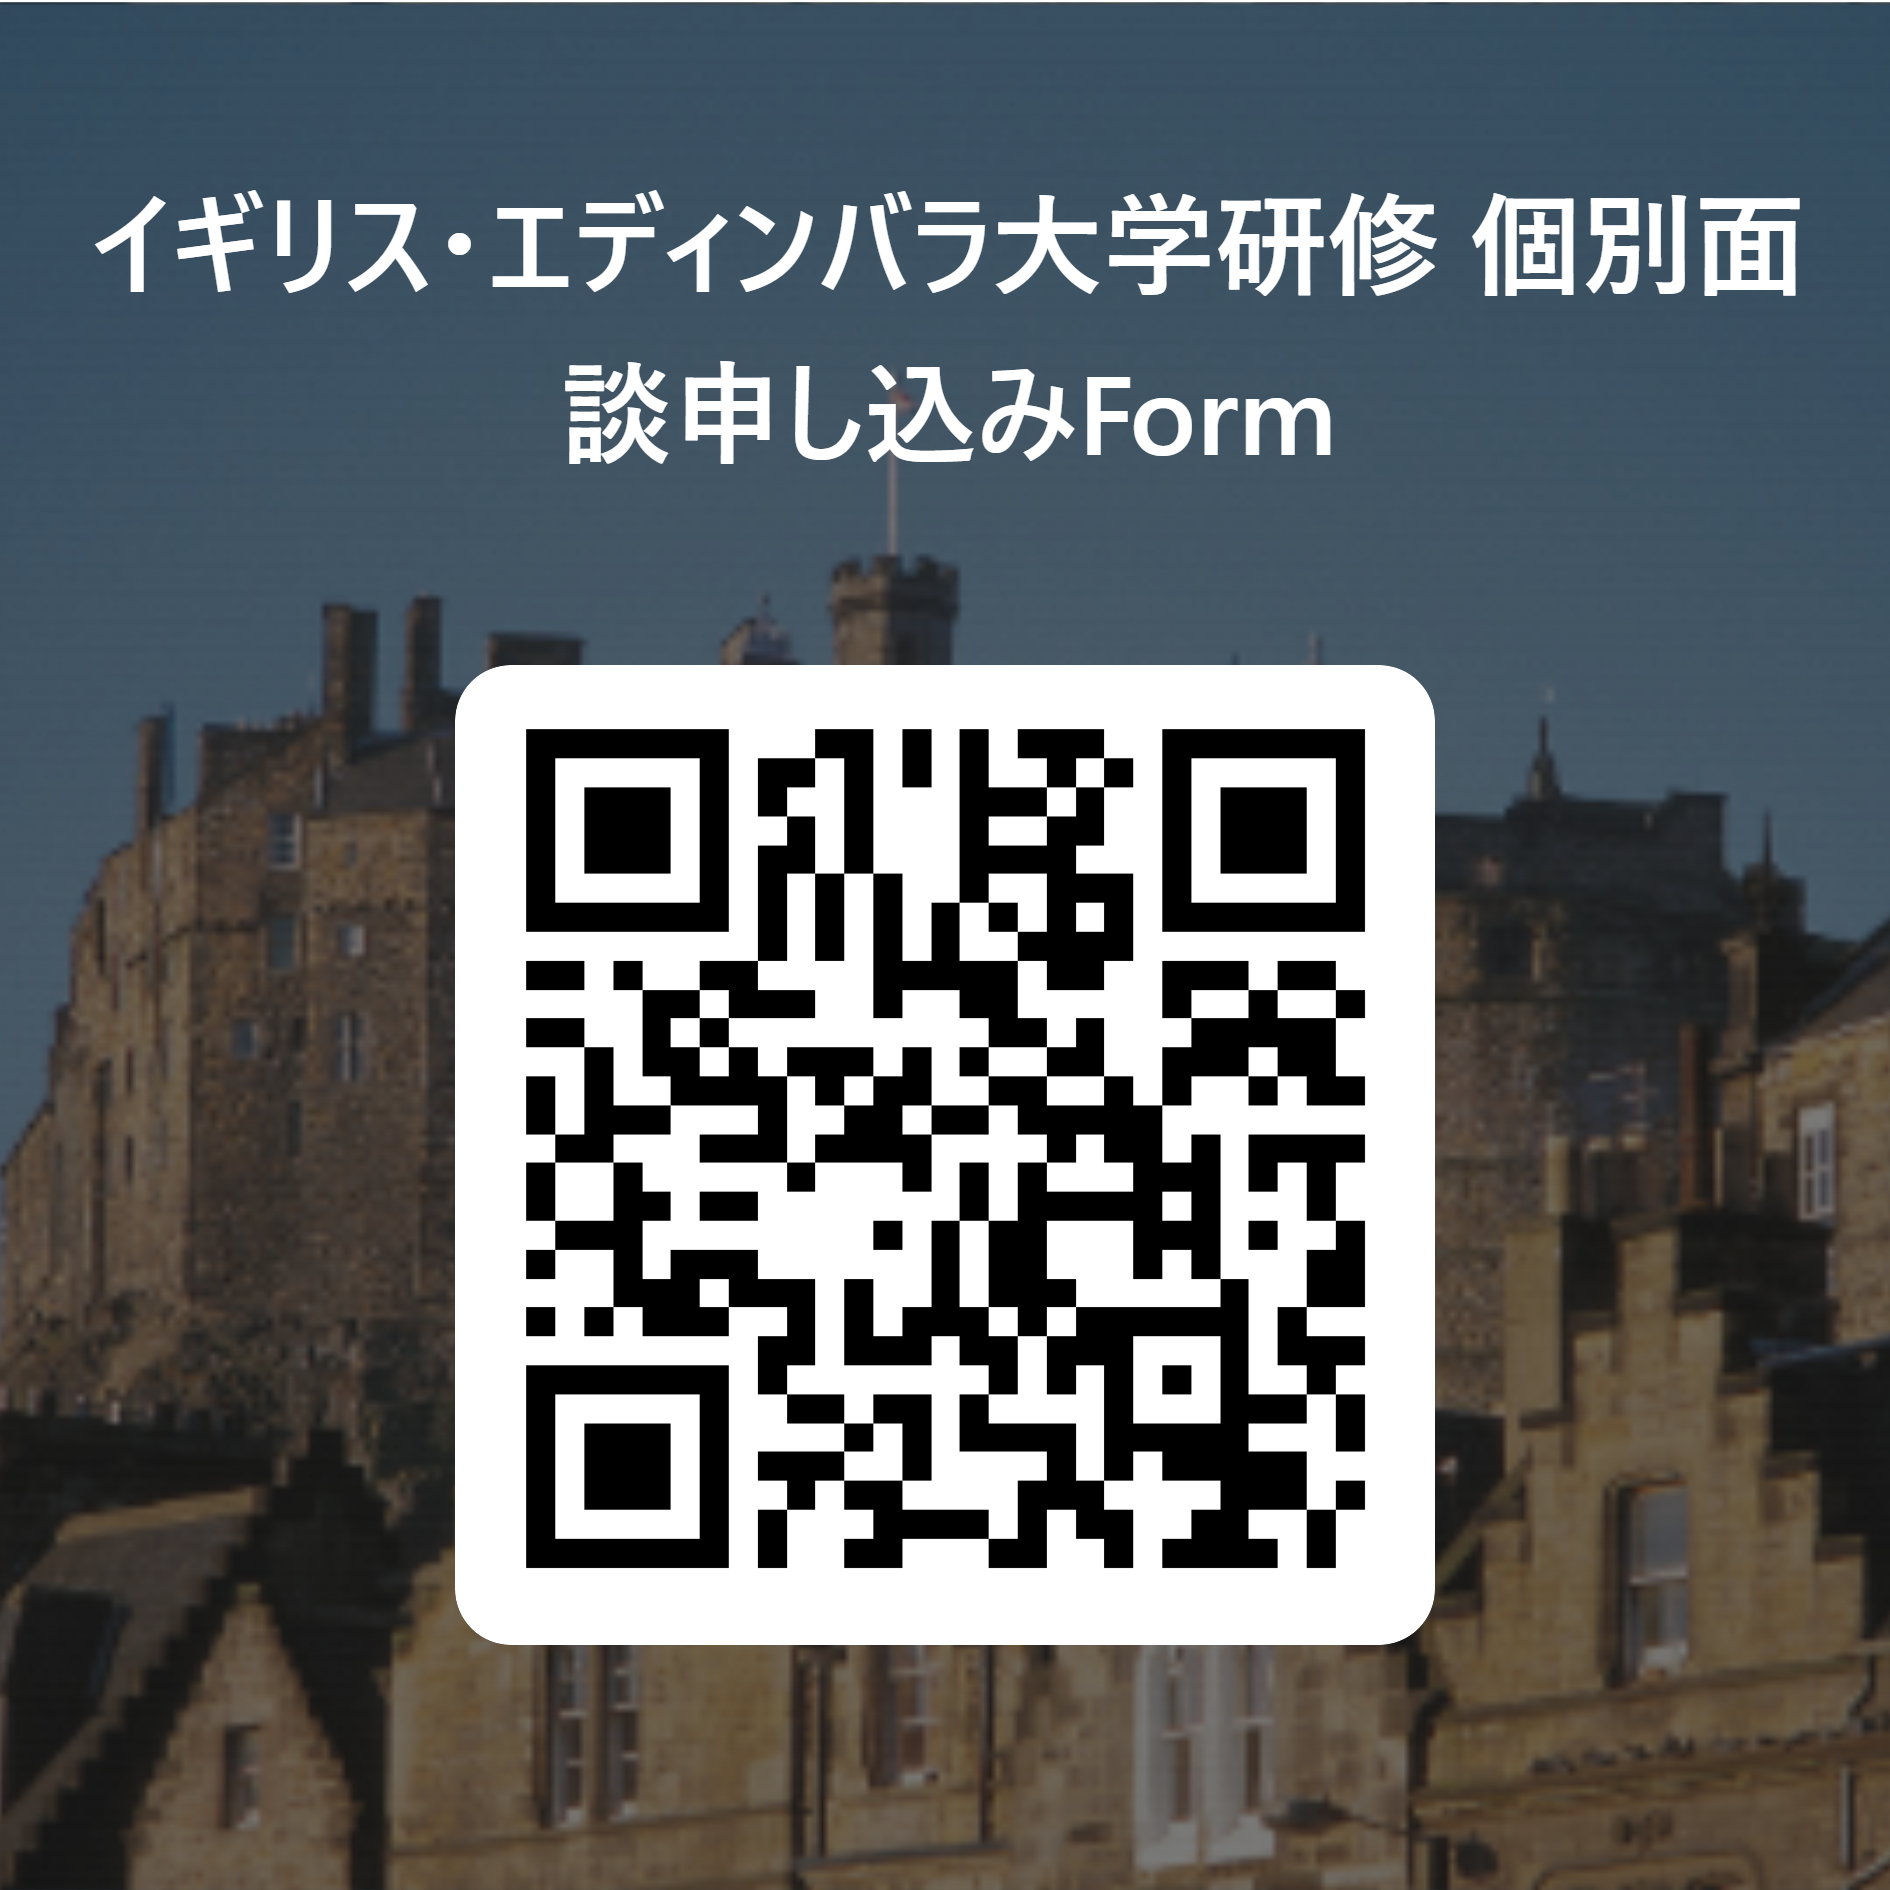 イギリス・エディンバラ大学研修_個別面談申し込みForm 用 QR コード (1).png